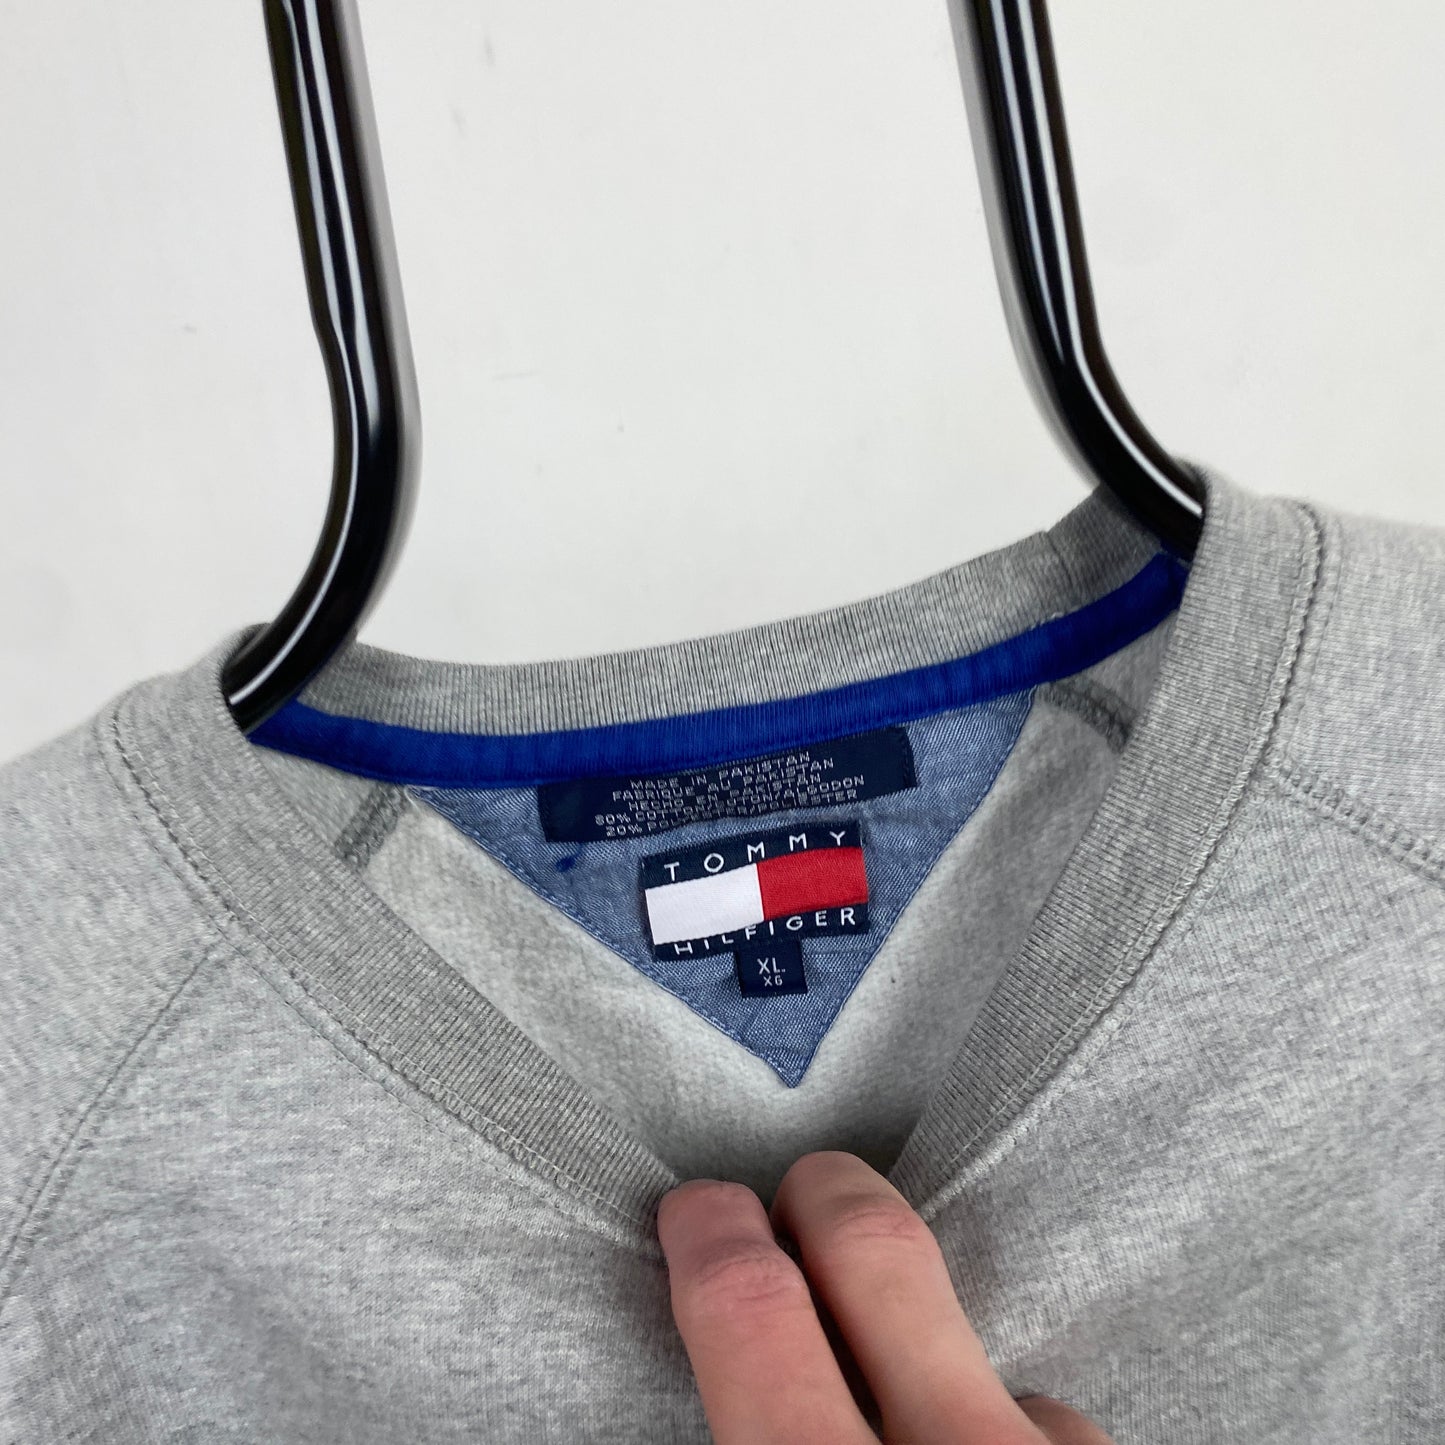 Retro Tommy Hilfiger Sweatshirt Grey XL